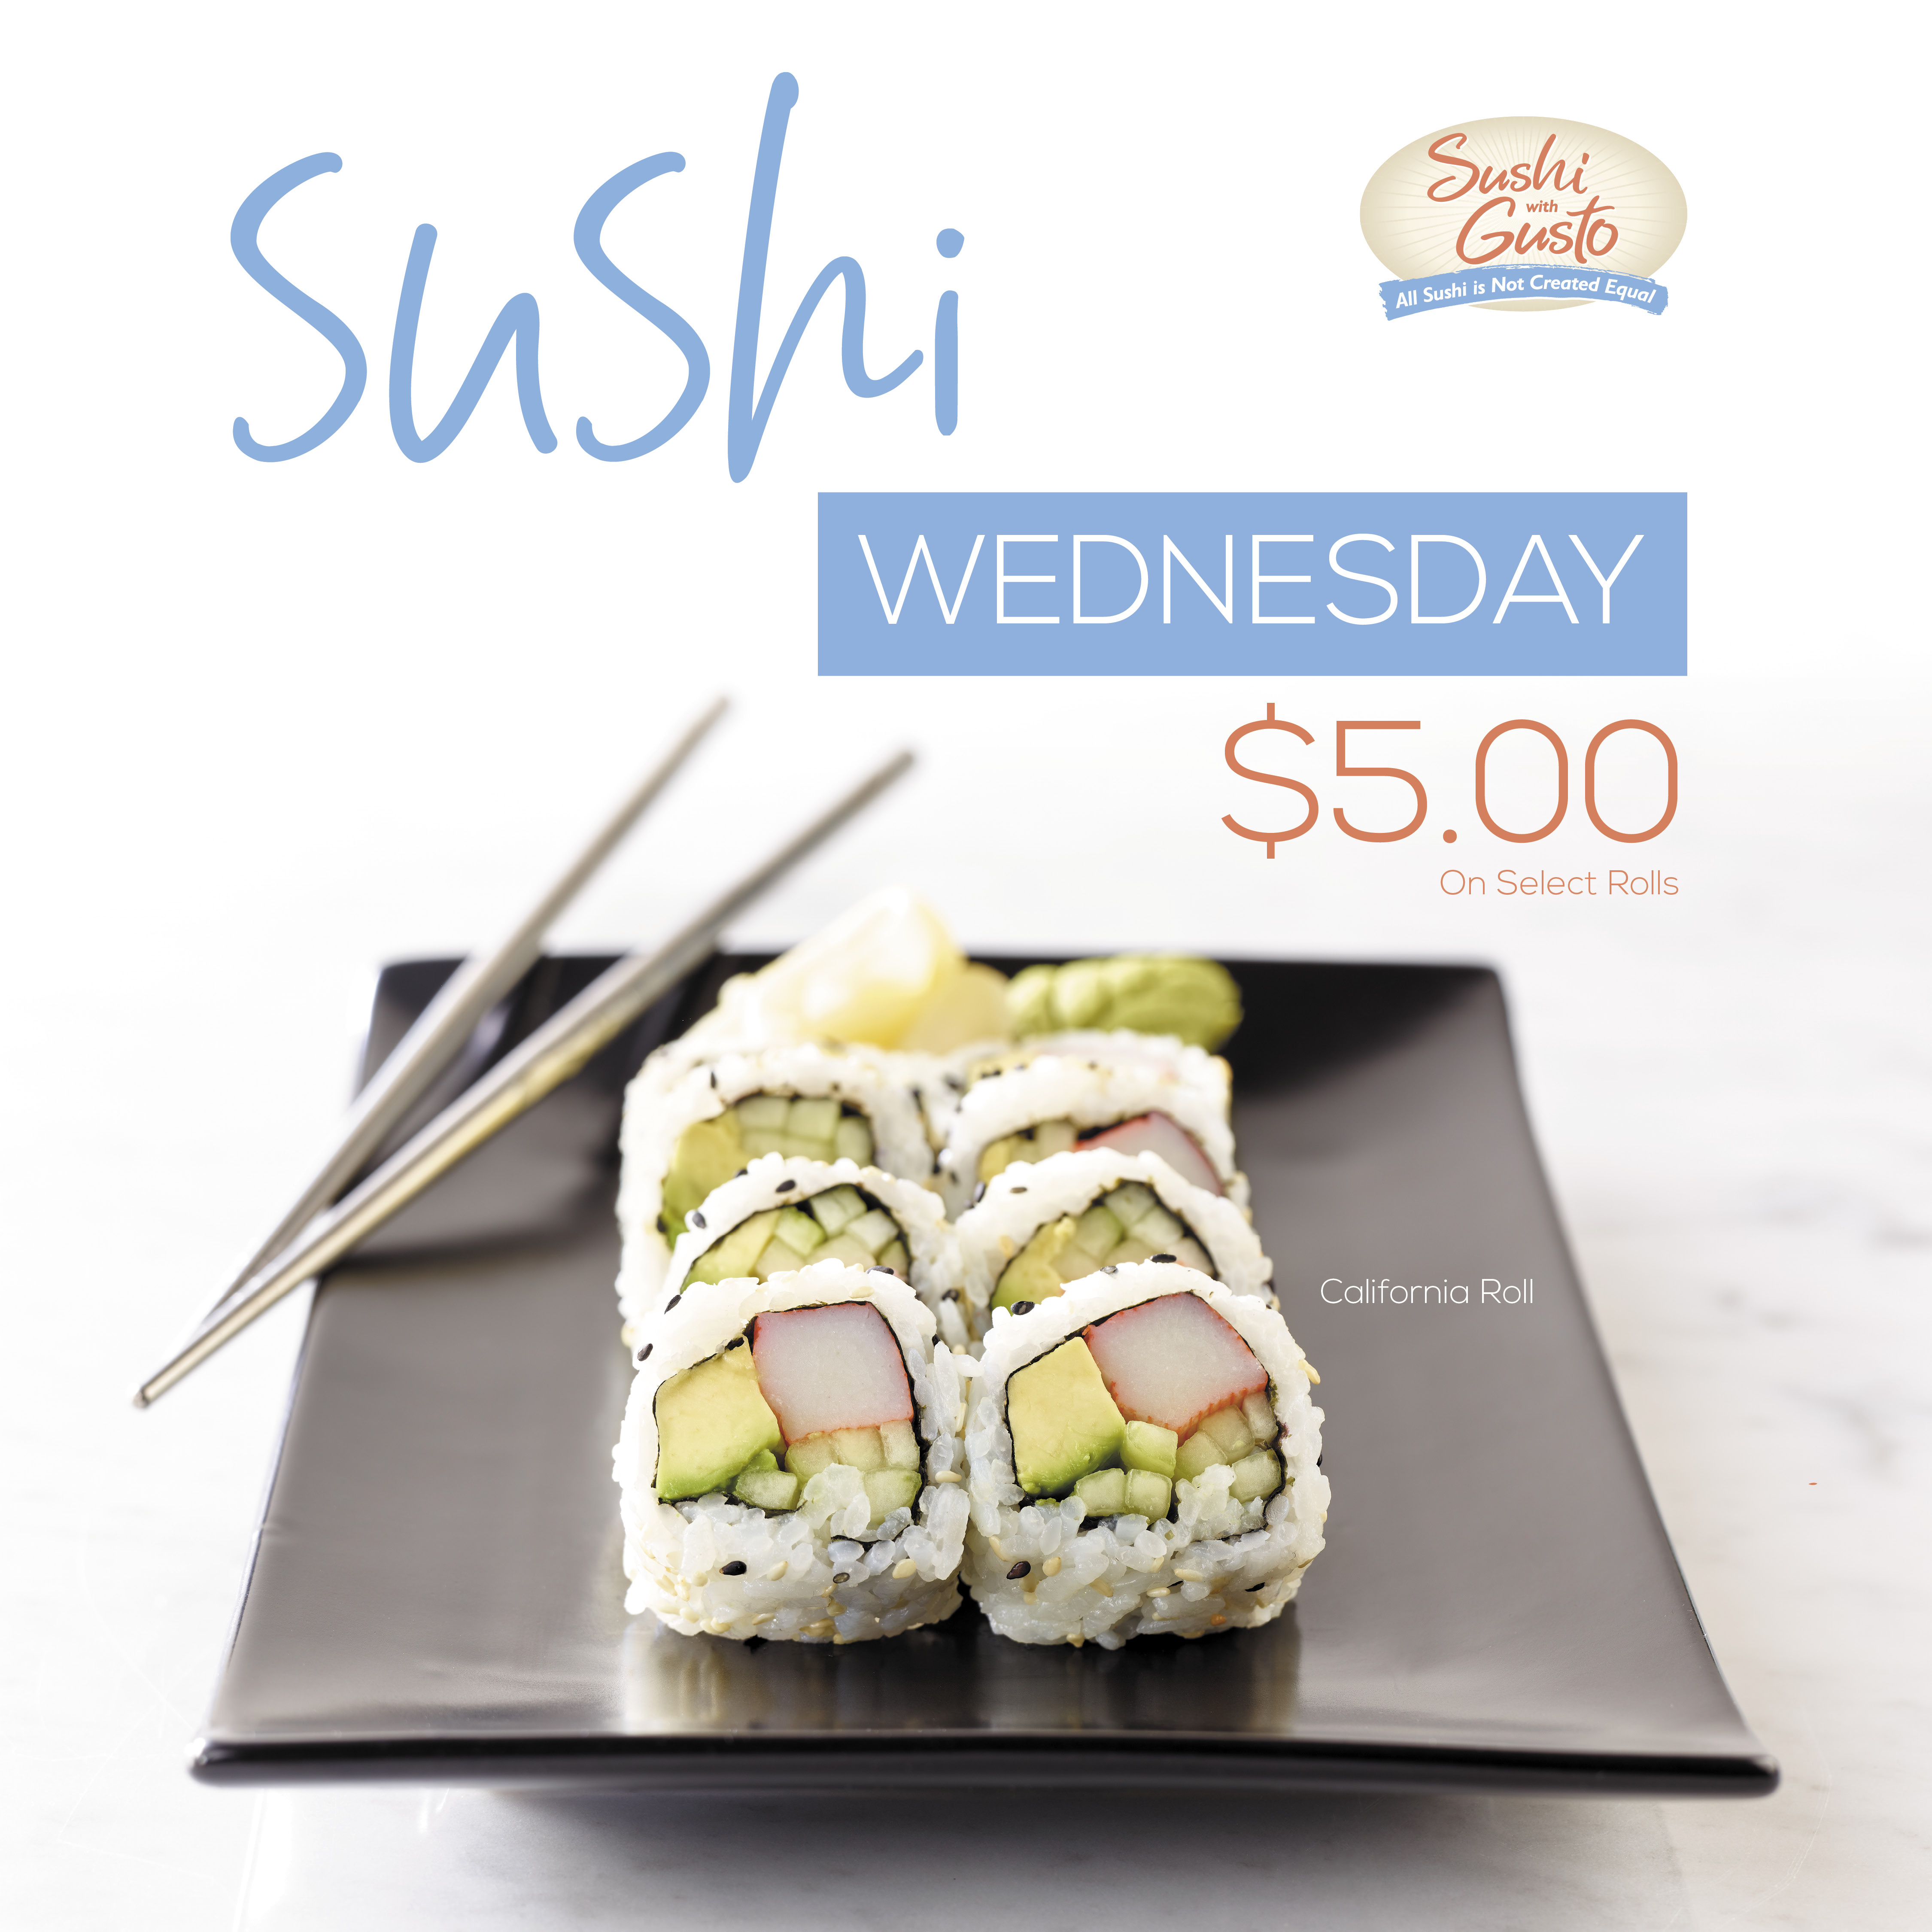 Sushi With Gusto! $5 Wednesdays